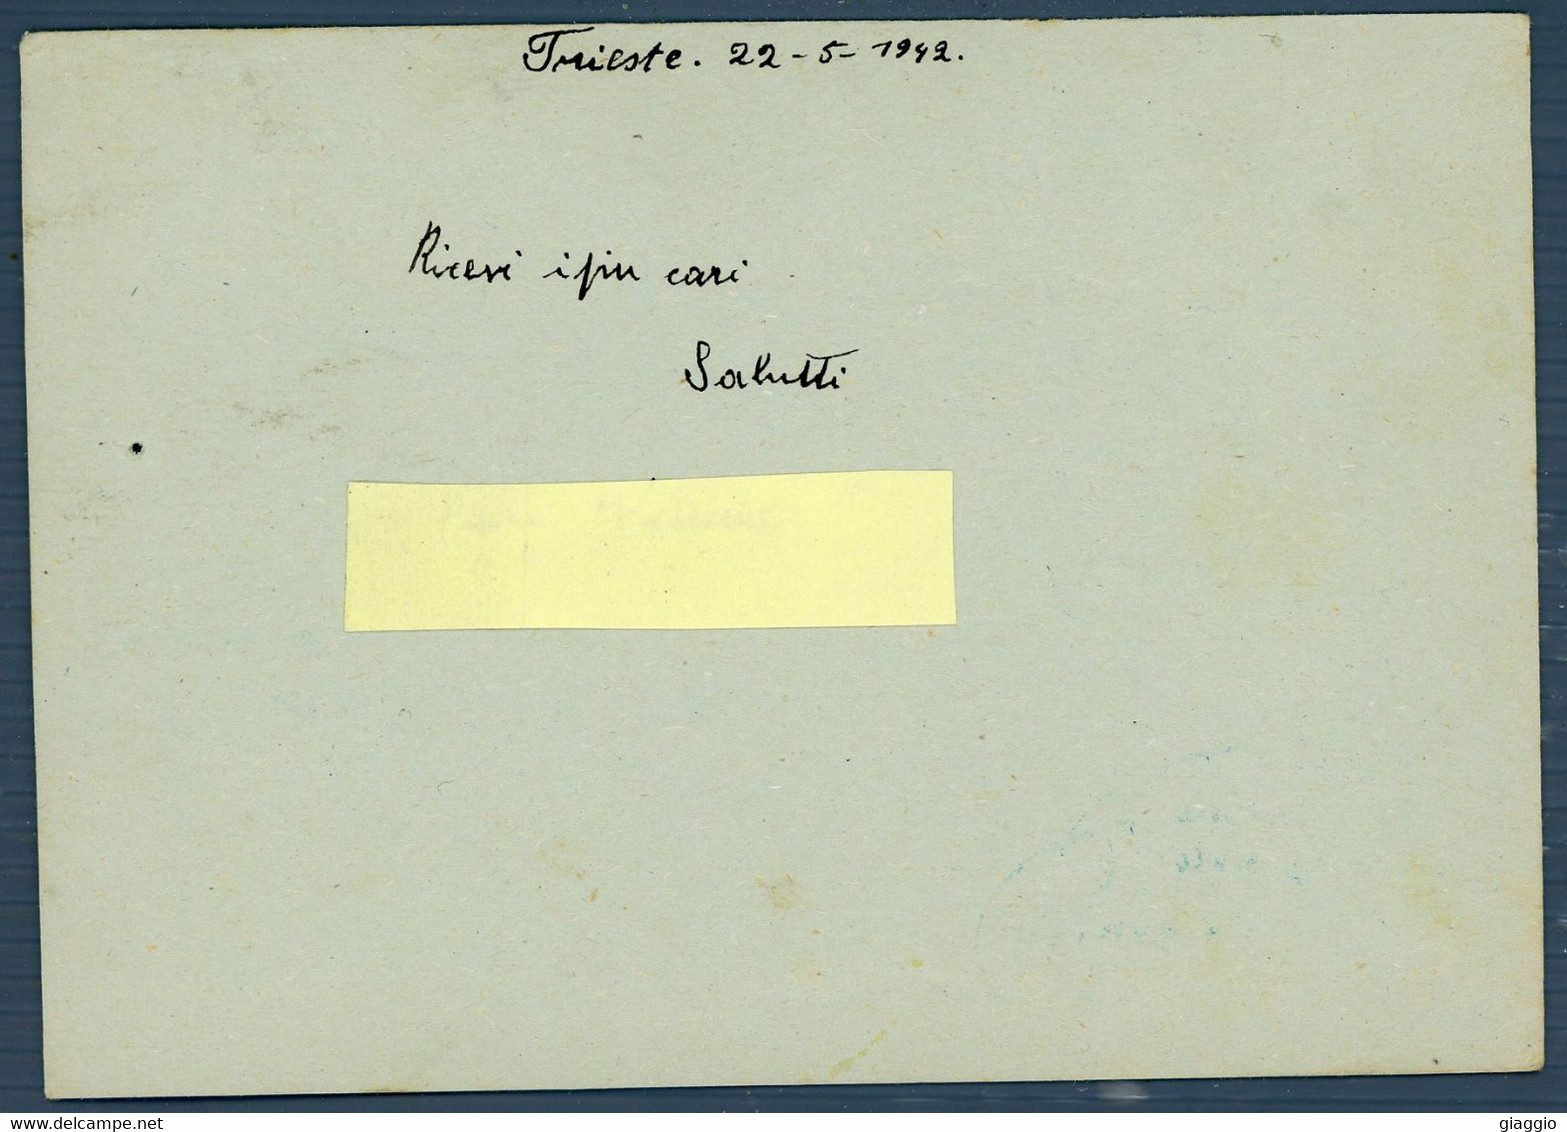 °°° Cartolina Postale N. 4919 - Per Le Forze Armate °°° - 1939-45